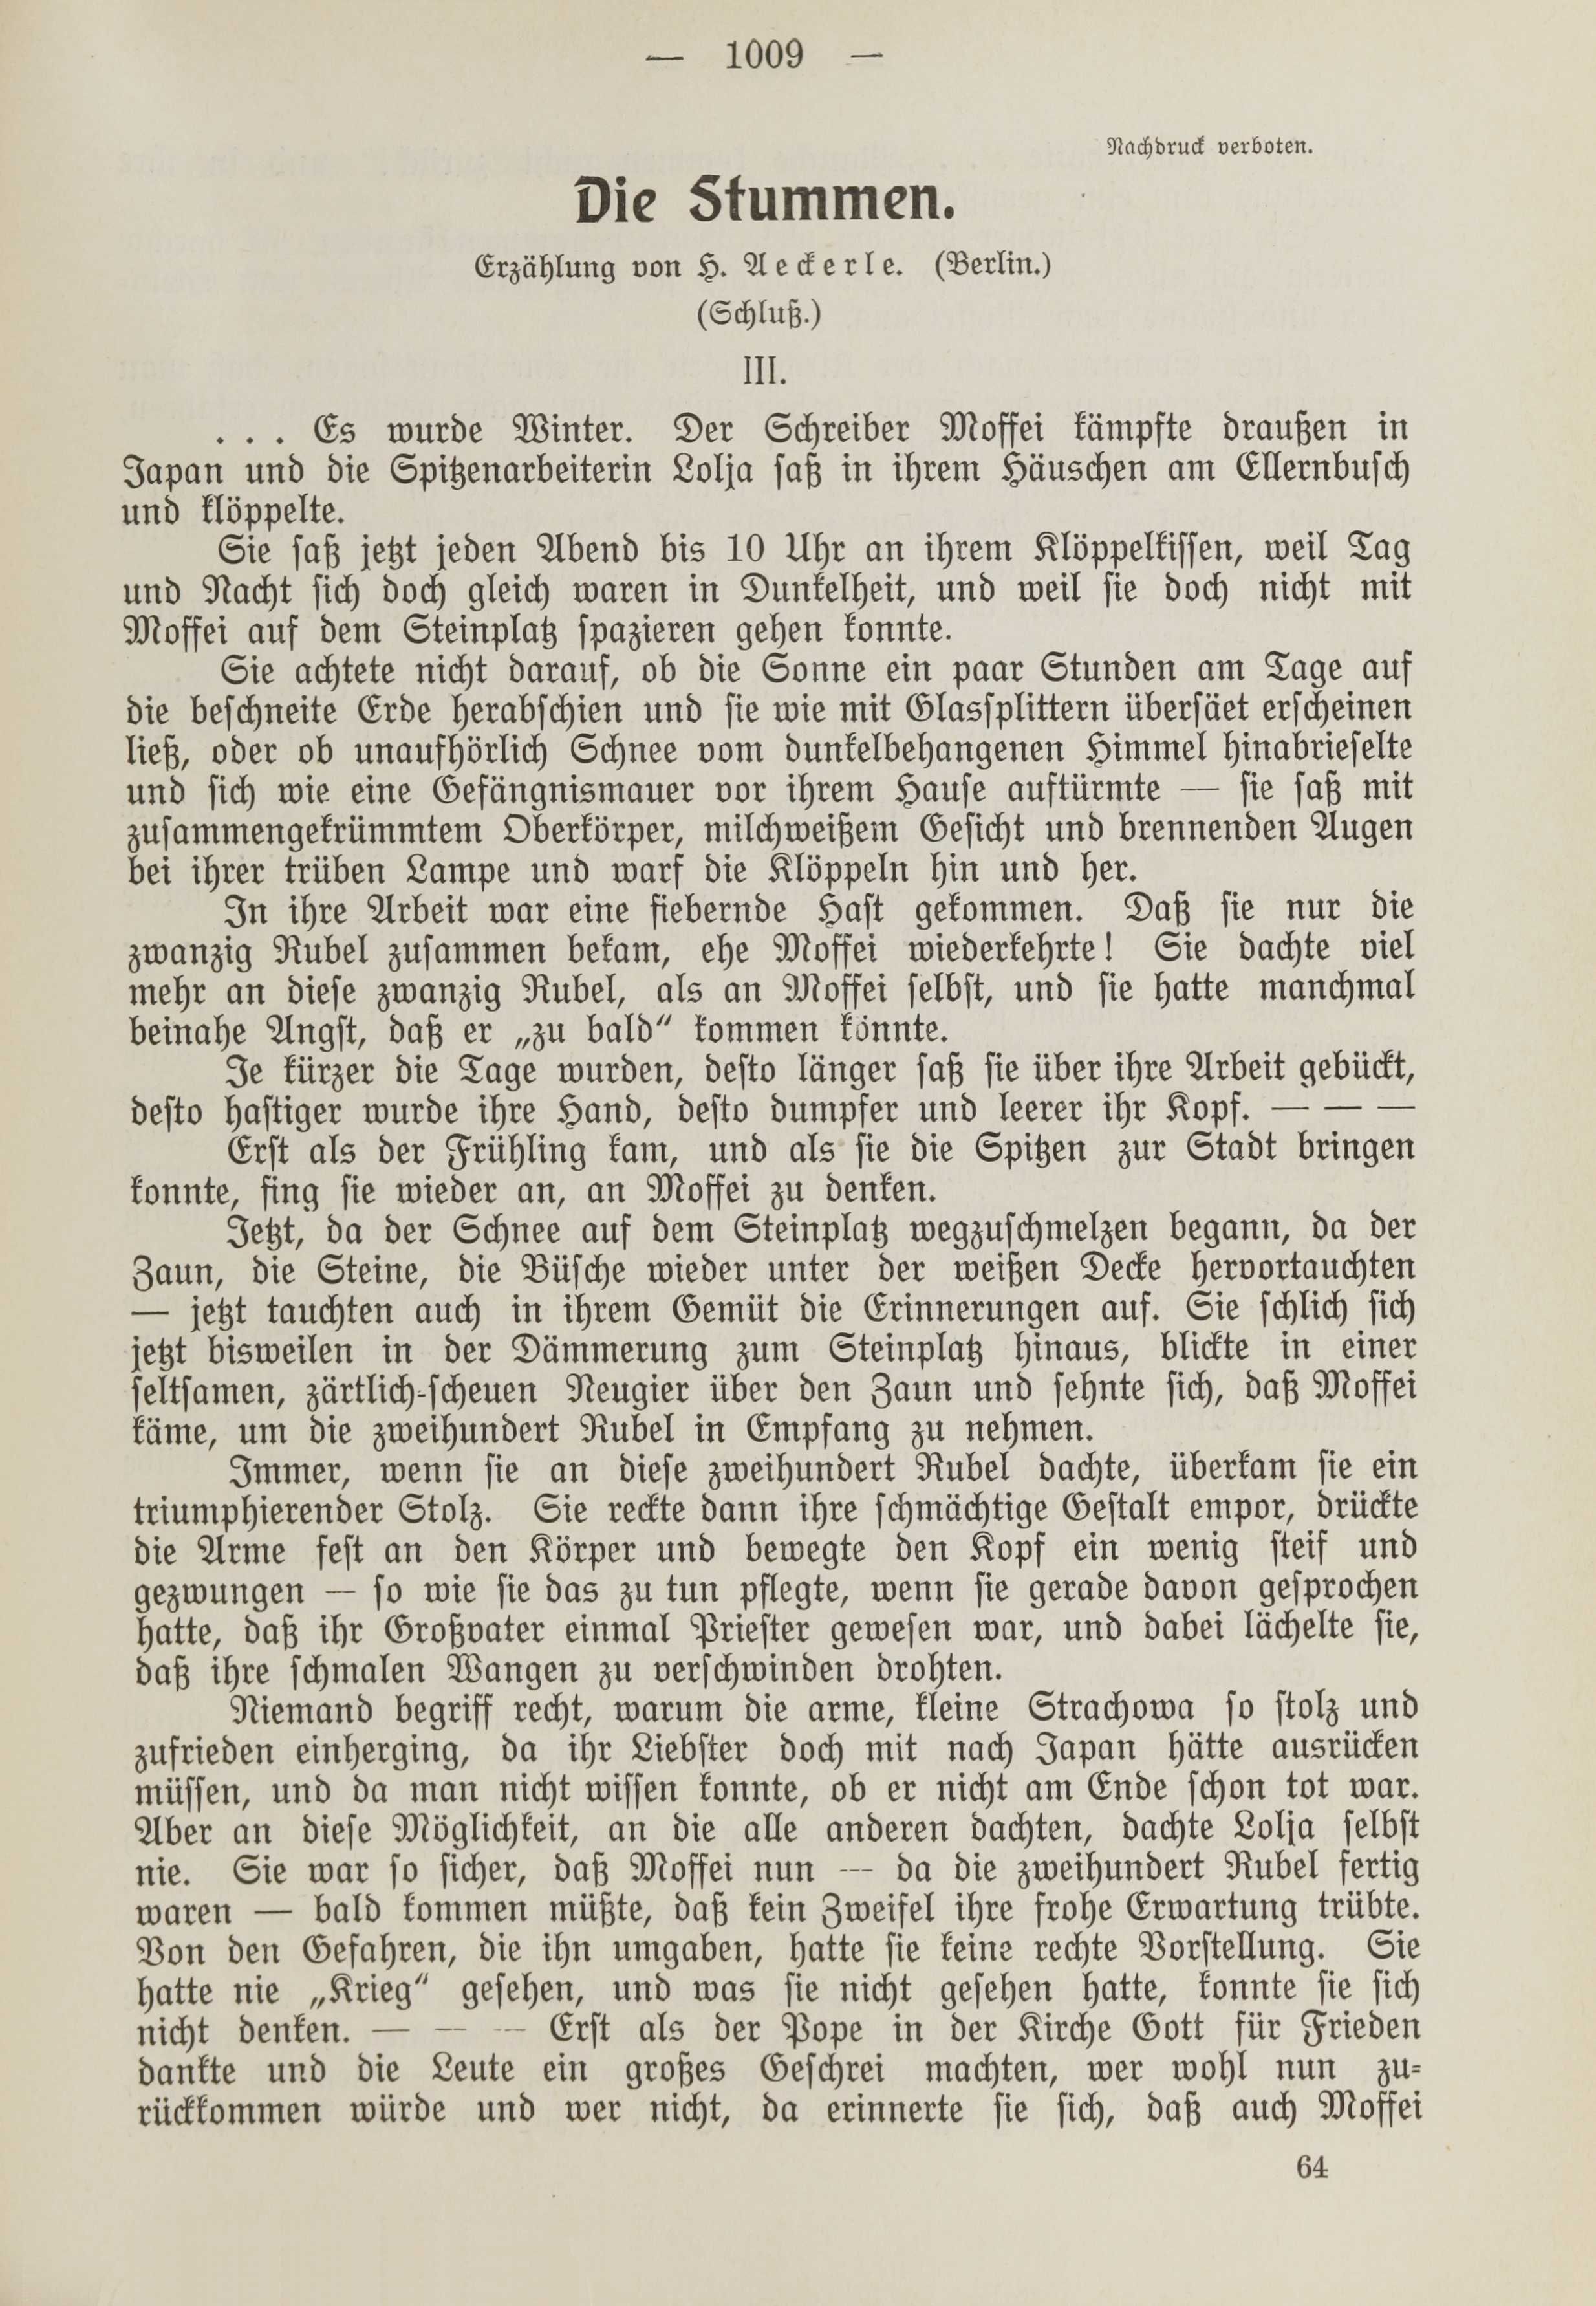 Deutsche Monatsschrift für Russland [1] (1912) | 1017. (1009) Main body of text